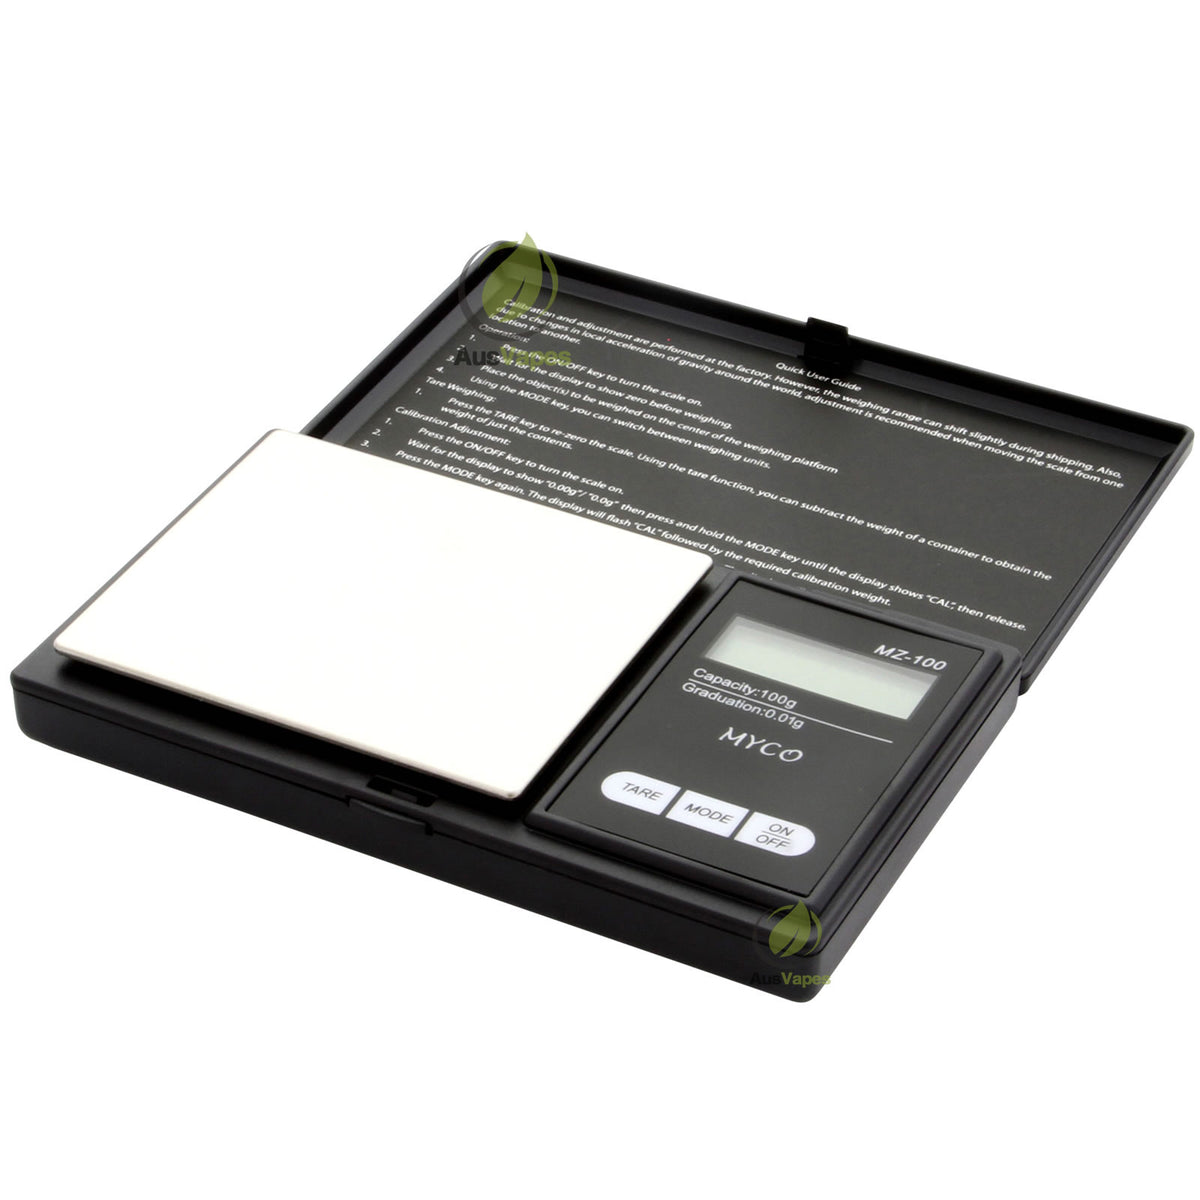 Myco MZ-100-BK Digital Pocket Scale 100g x 0.01g